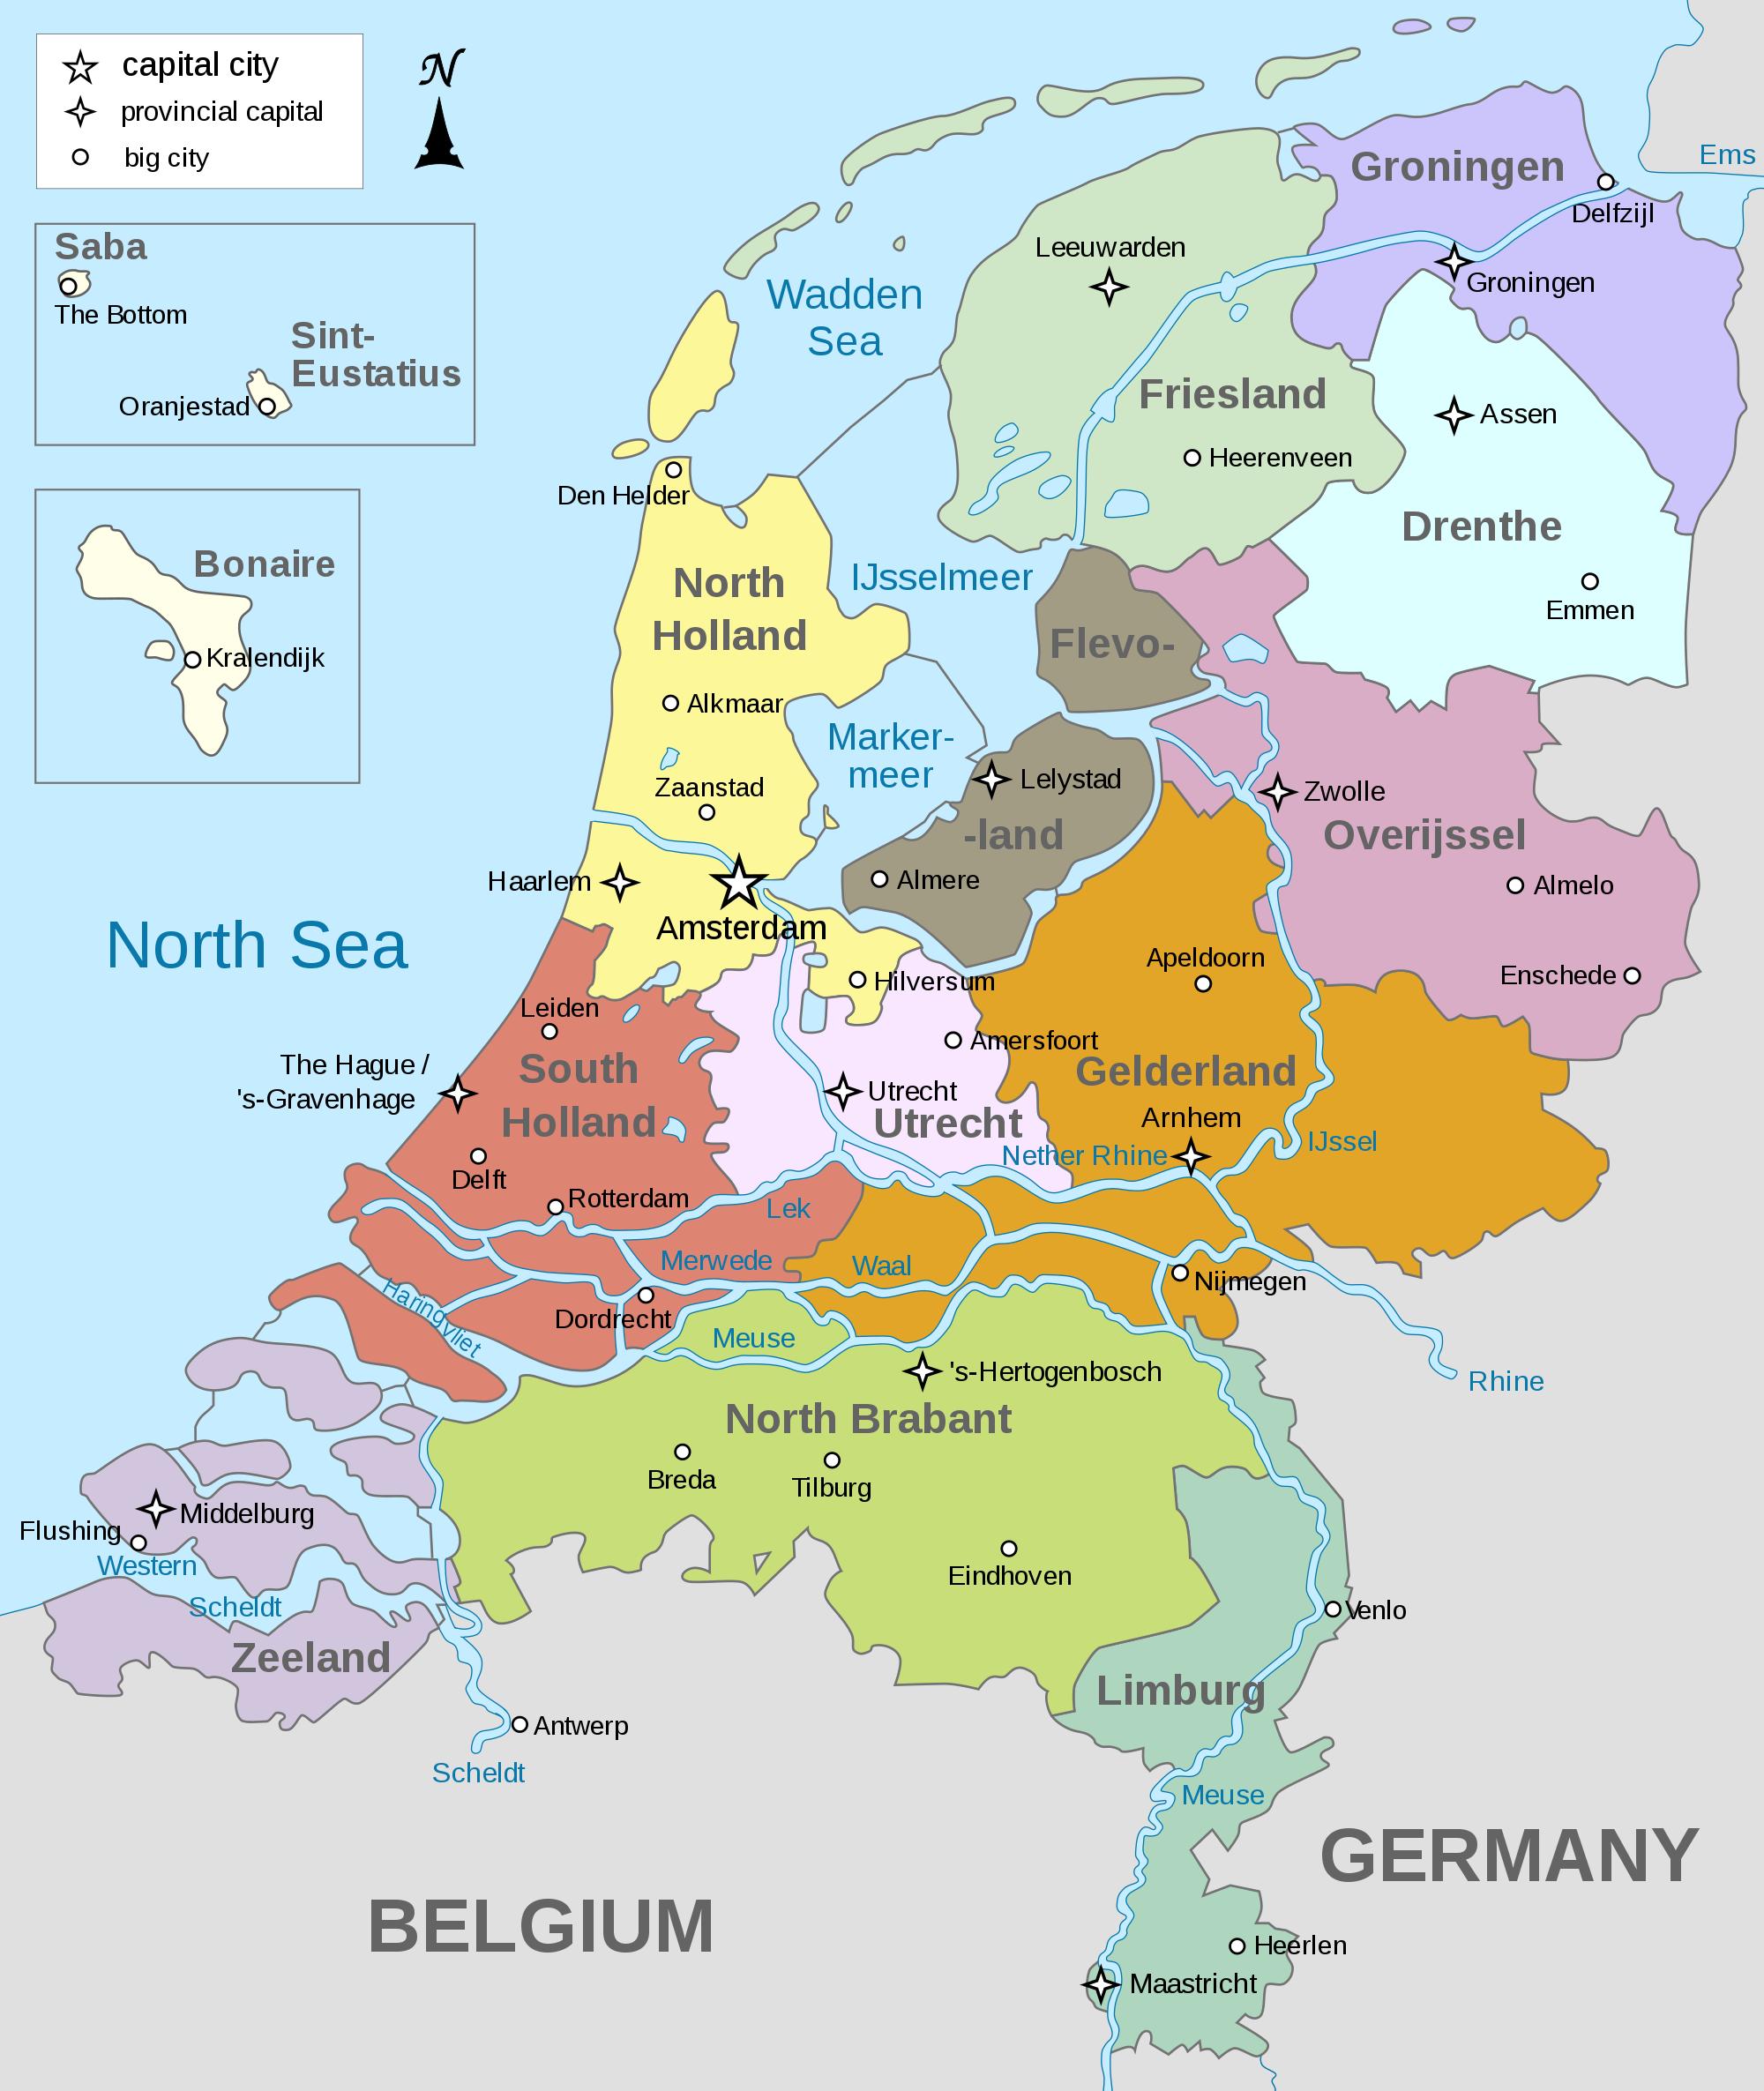 Karte von Holland - Niederlande auf einer Karte (Western Europe - Europe)